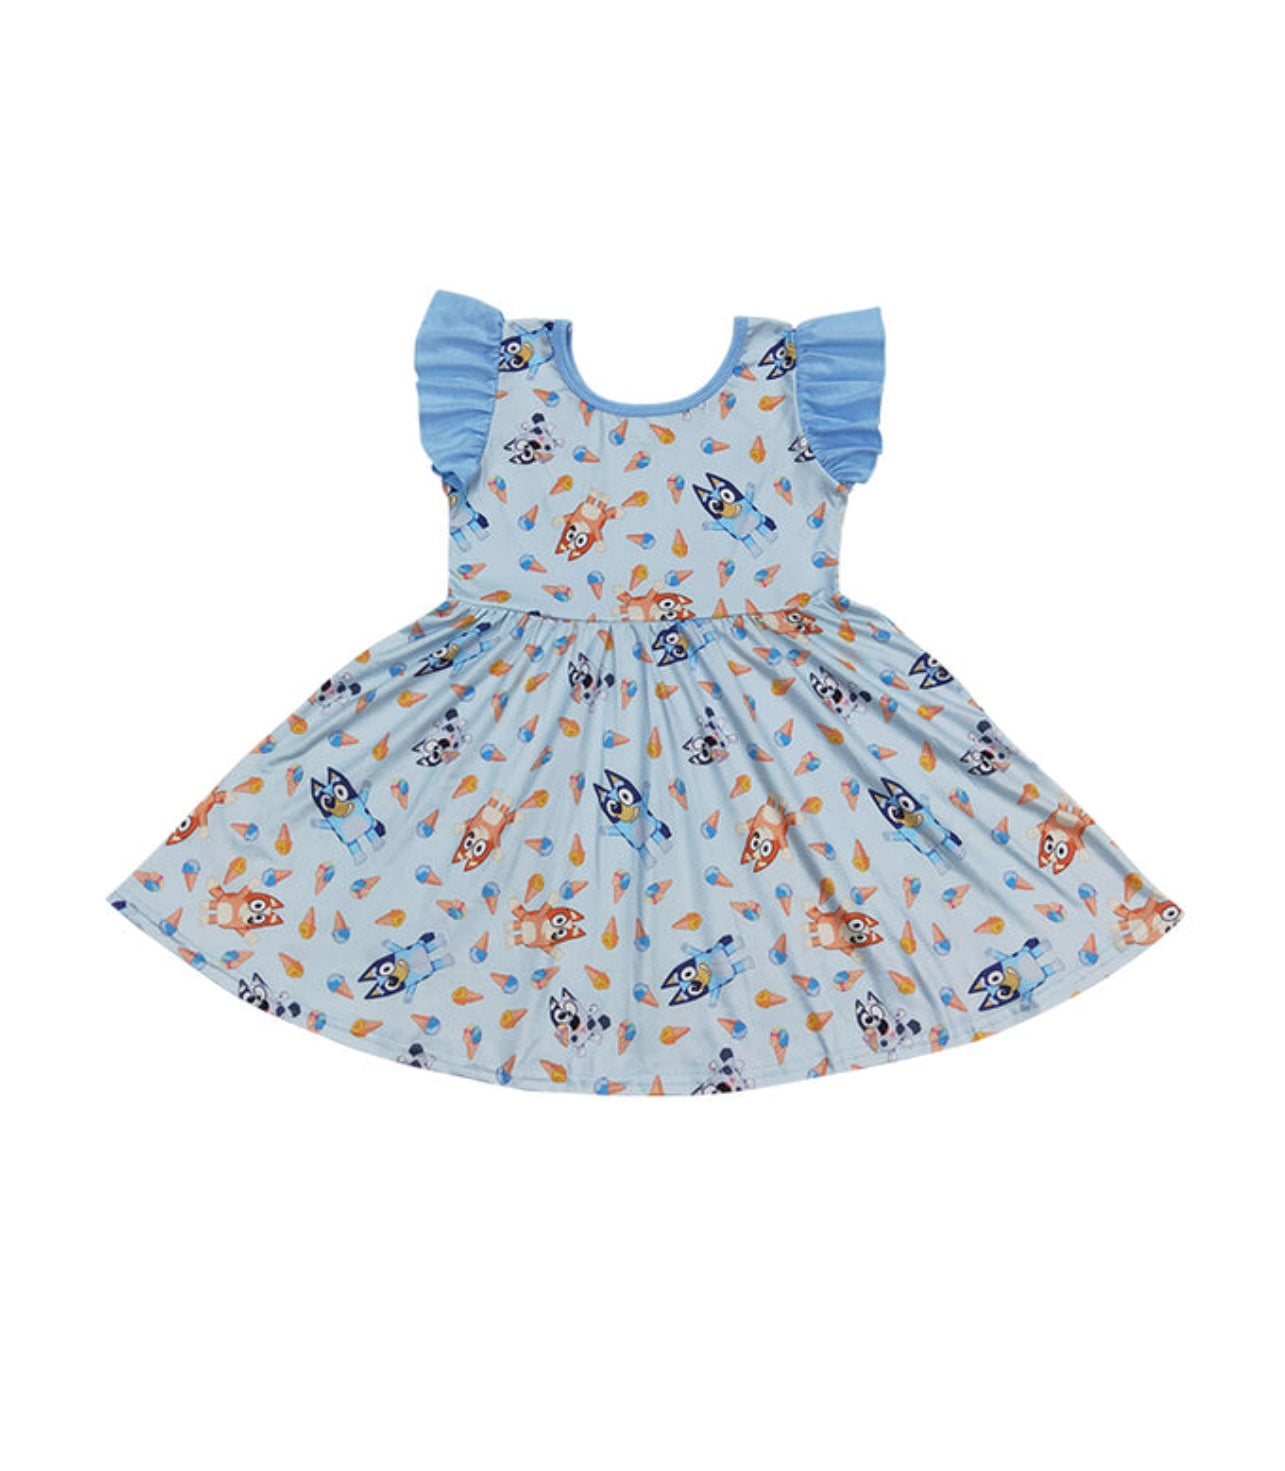 Bluey Print Ruffle Dress